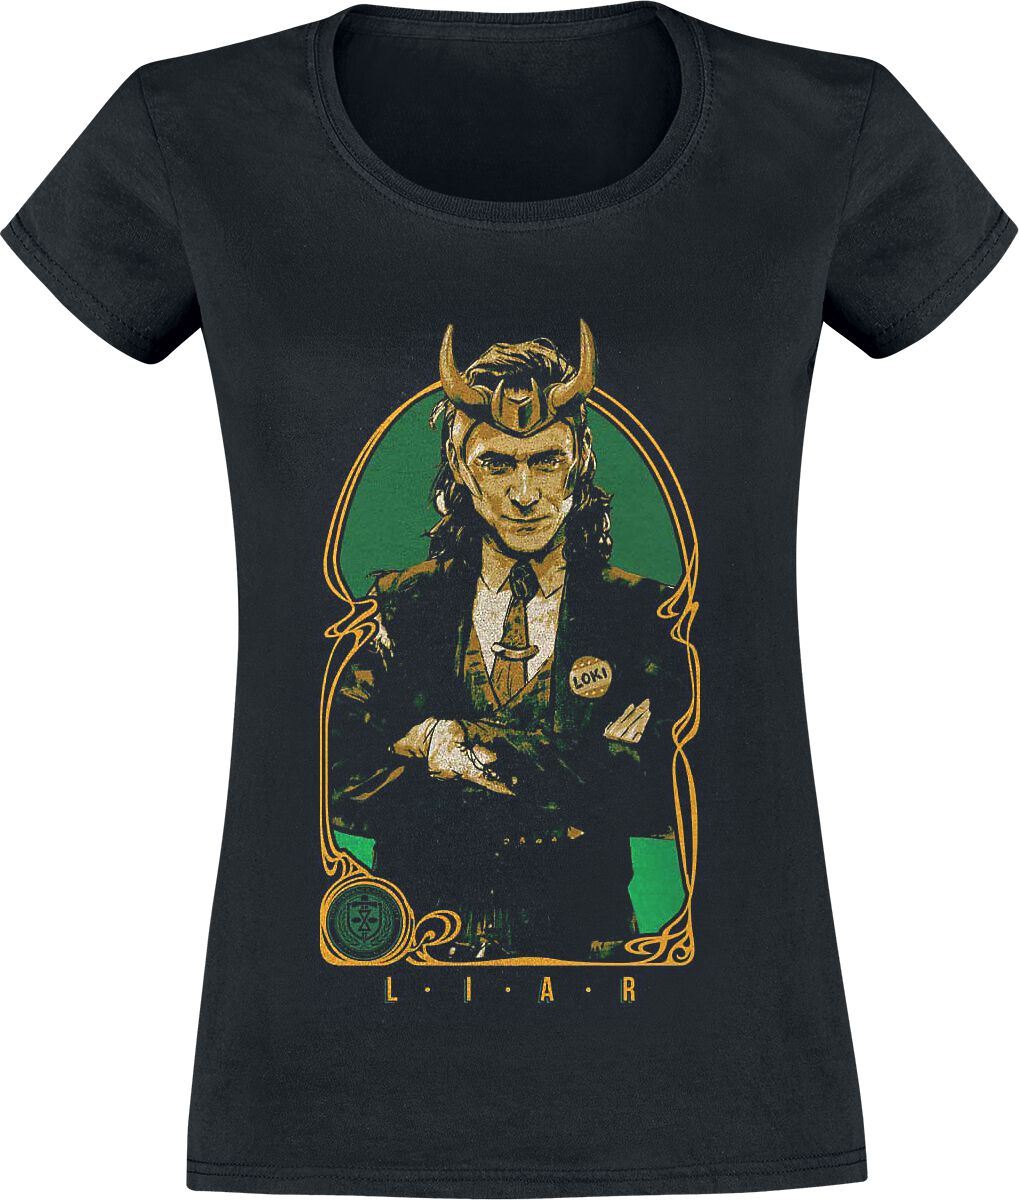 Loki Liar T-Shirt black